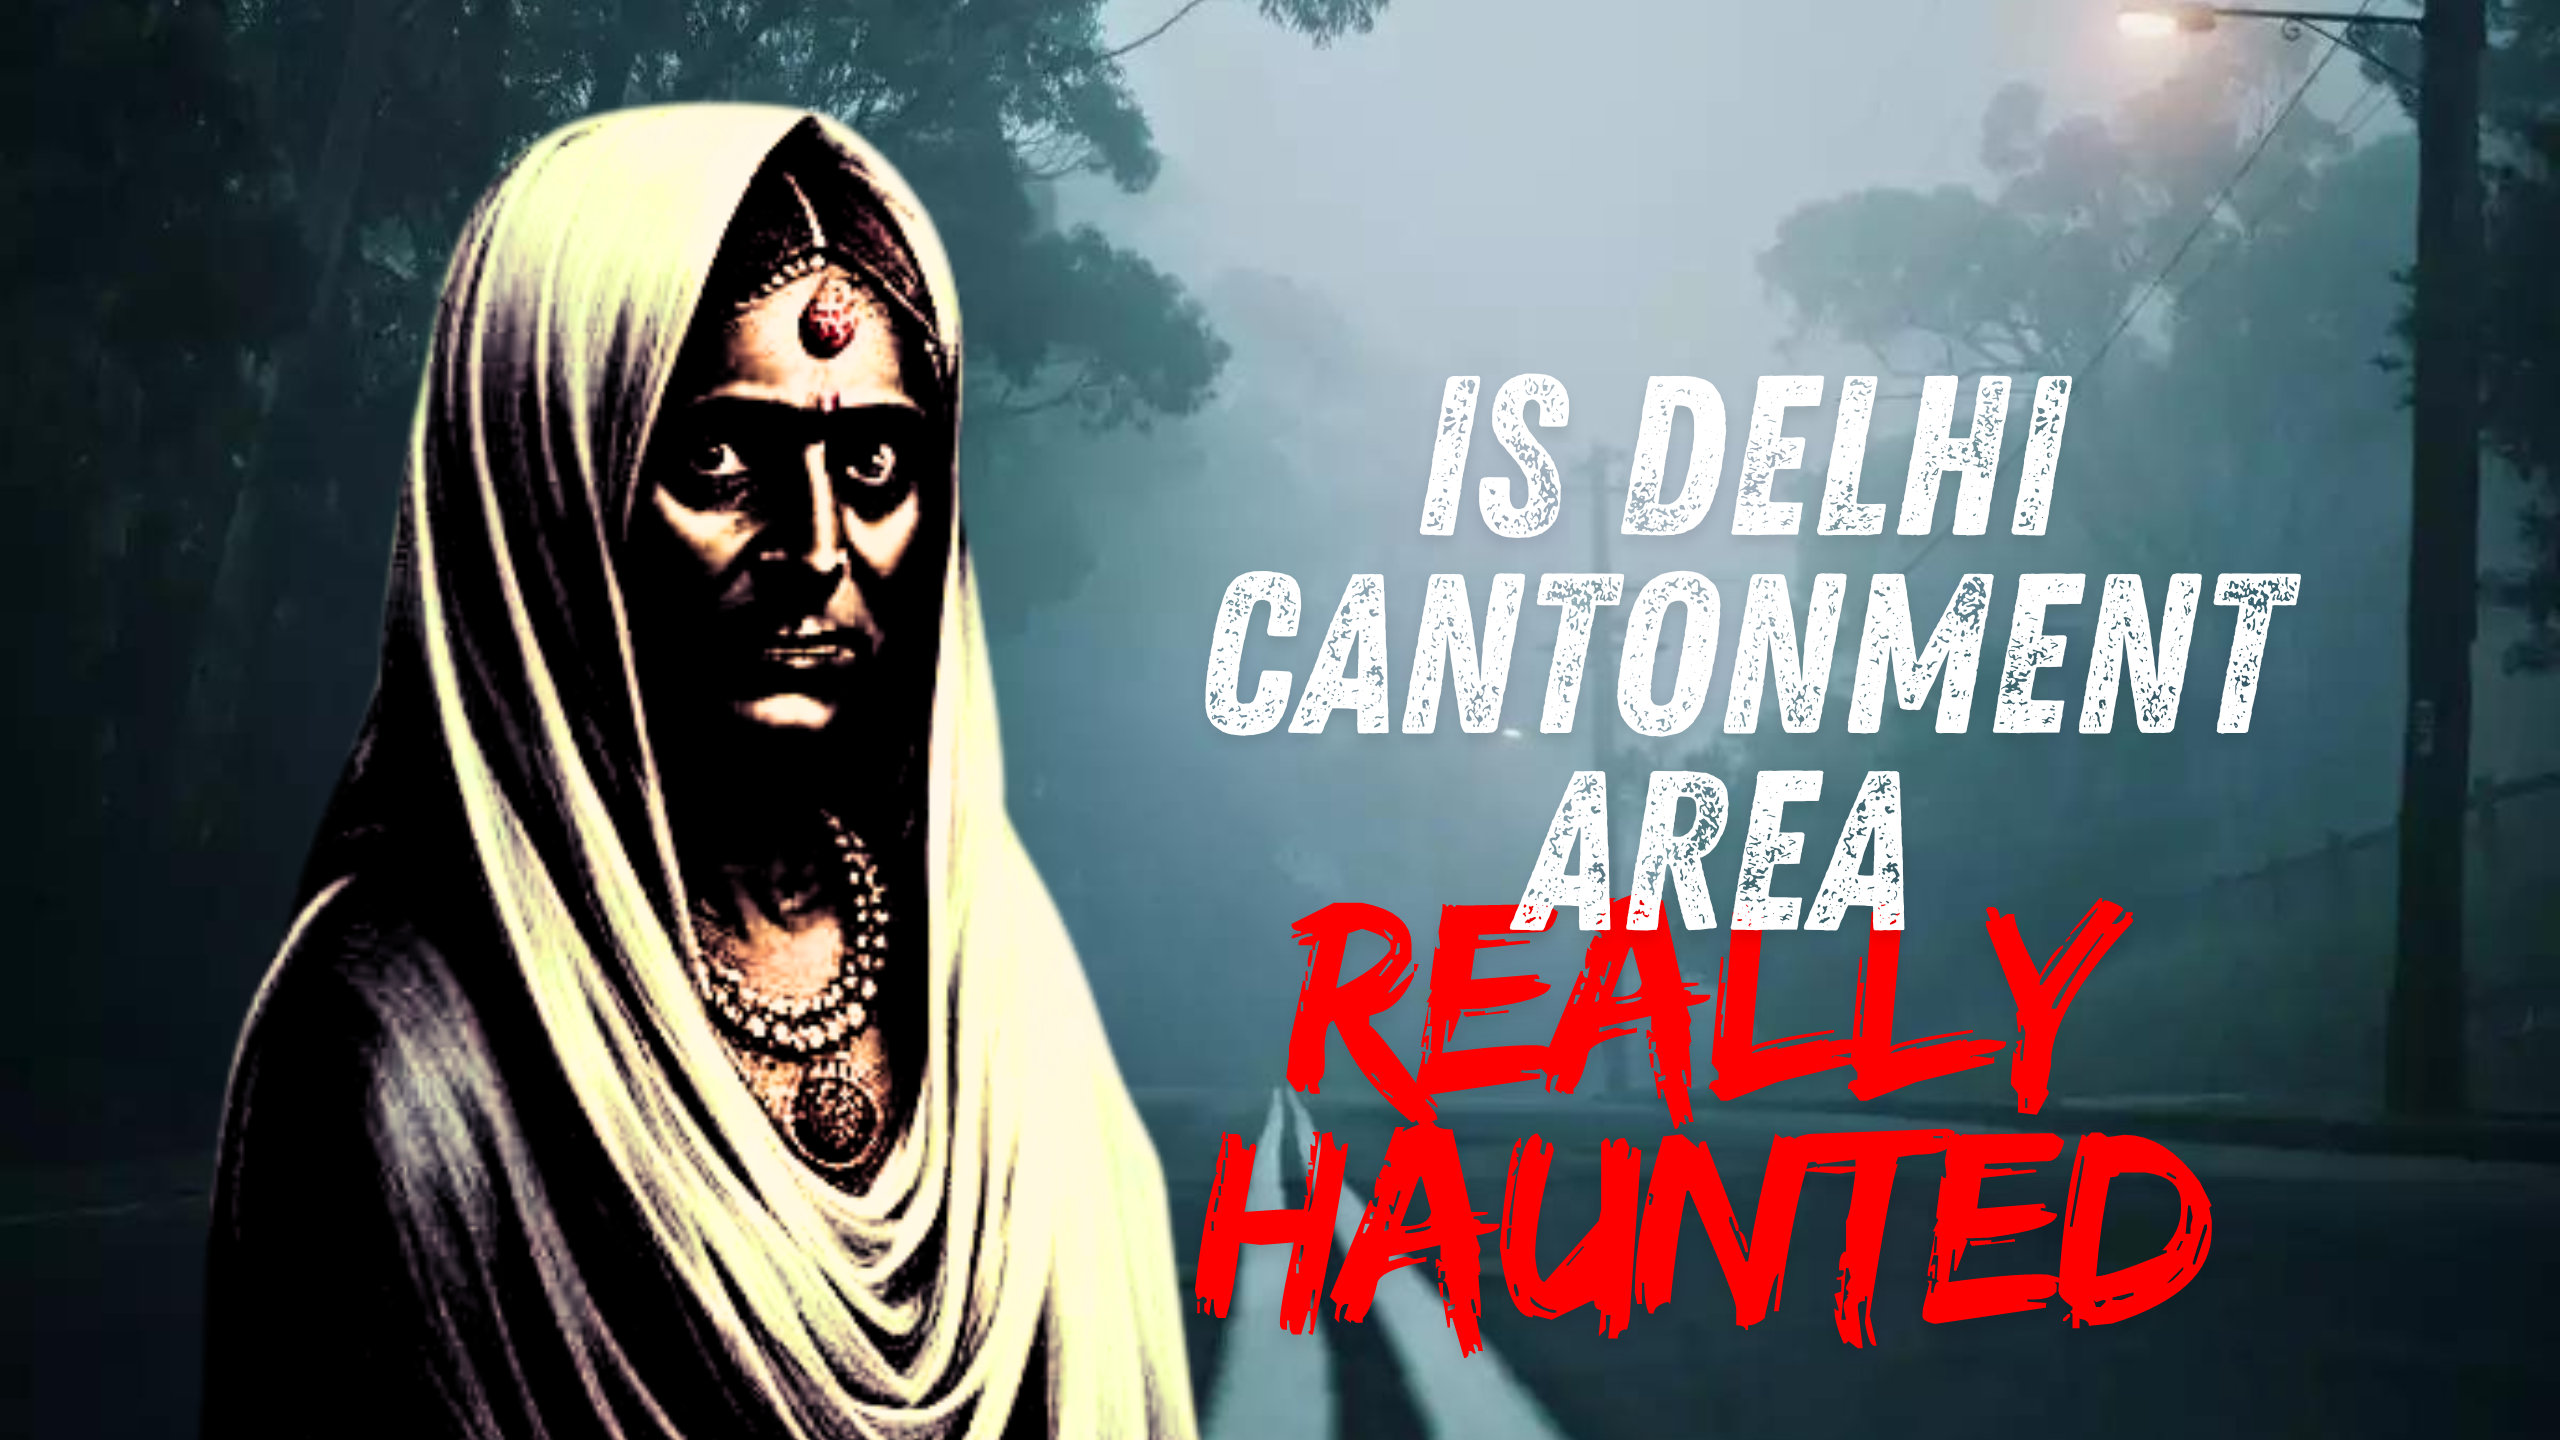 Delhi Cantonment Haunted Story